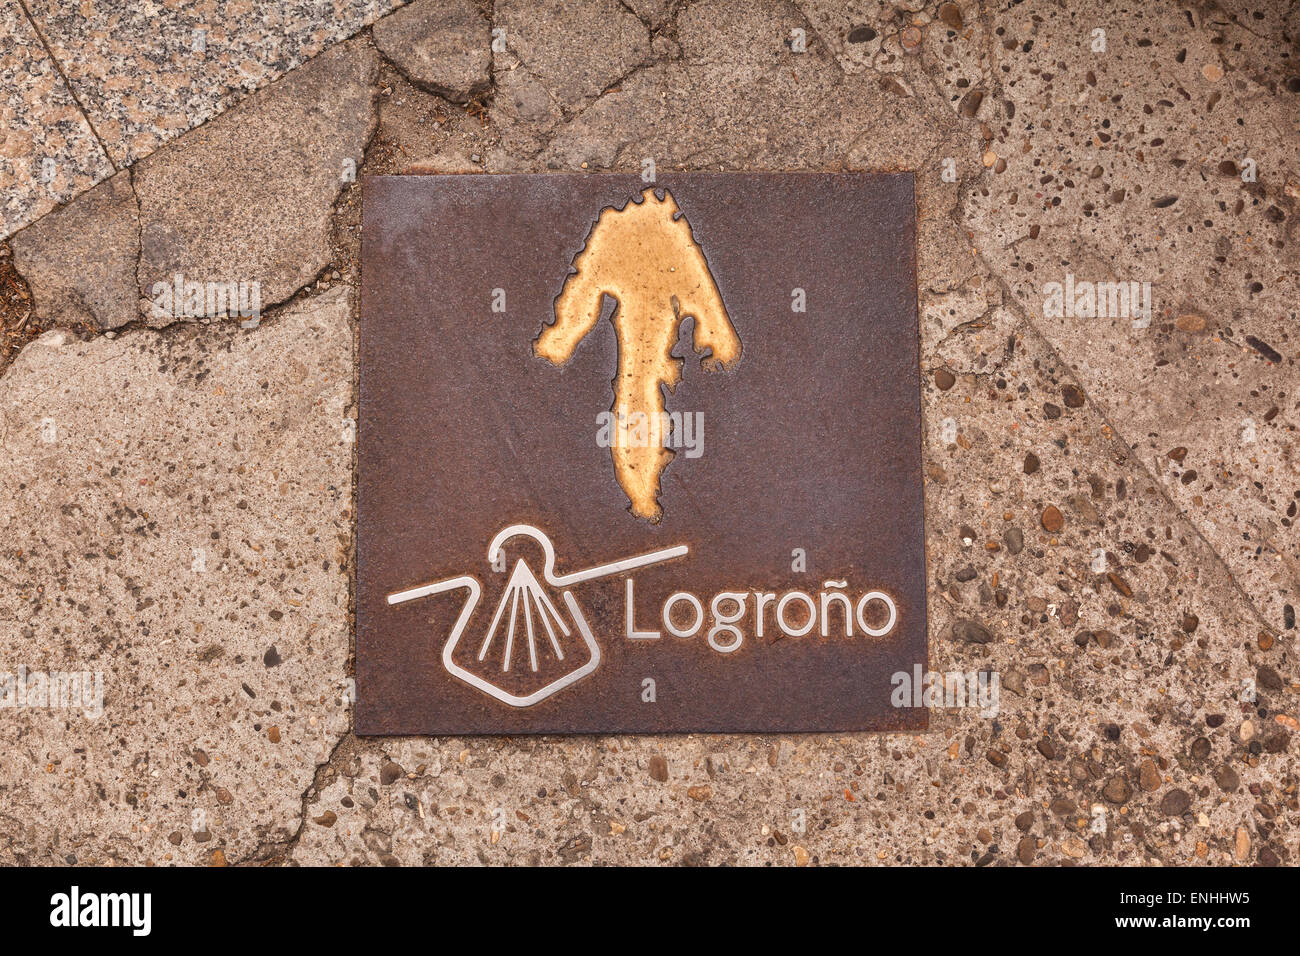 Pflaster-Zeichen für den Camino de Santiago oder Pilgerweg, die durchquert die Stadt Logroño, La Rioja, Spanien. Stockfoto